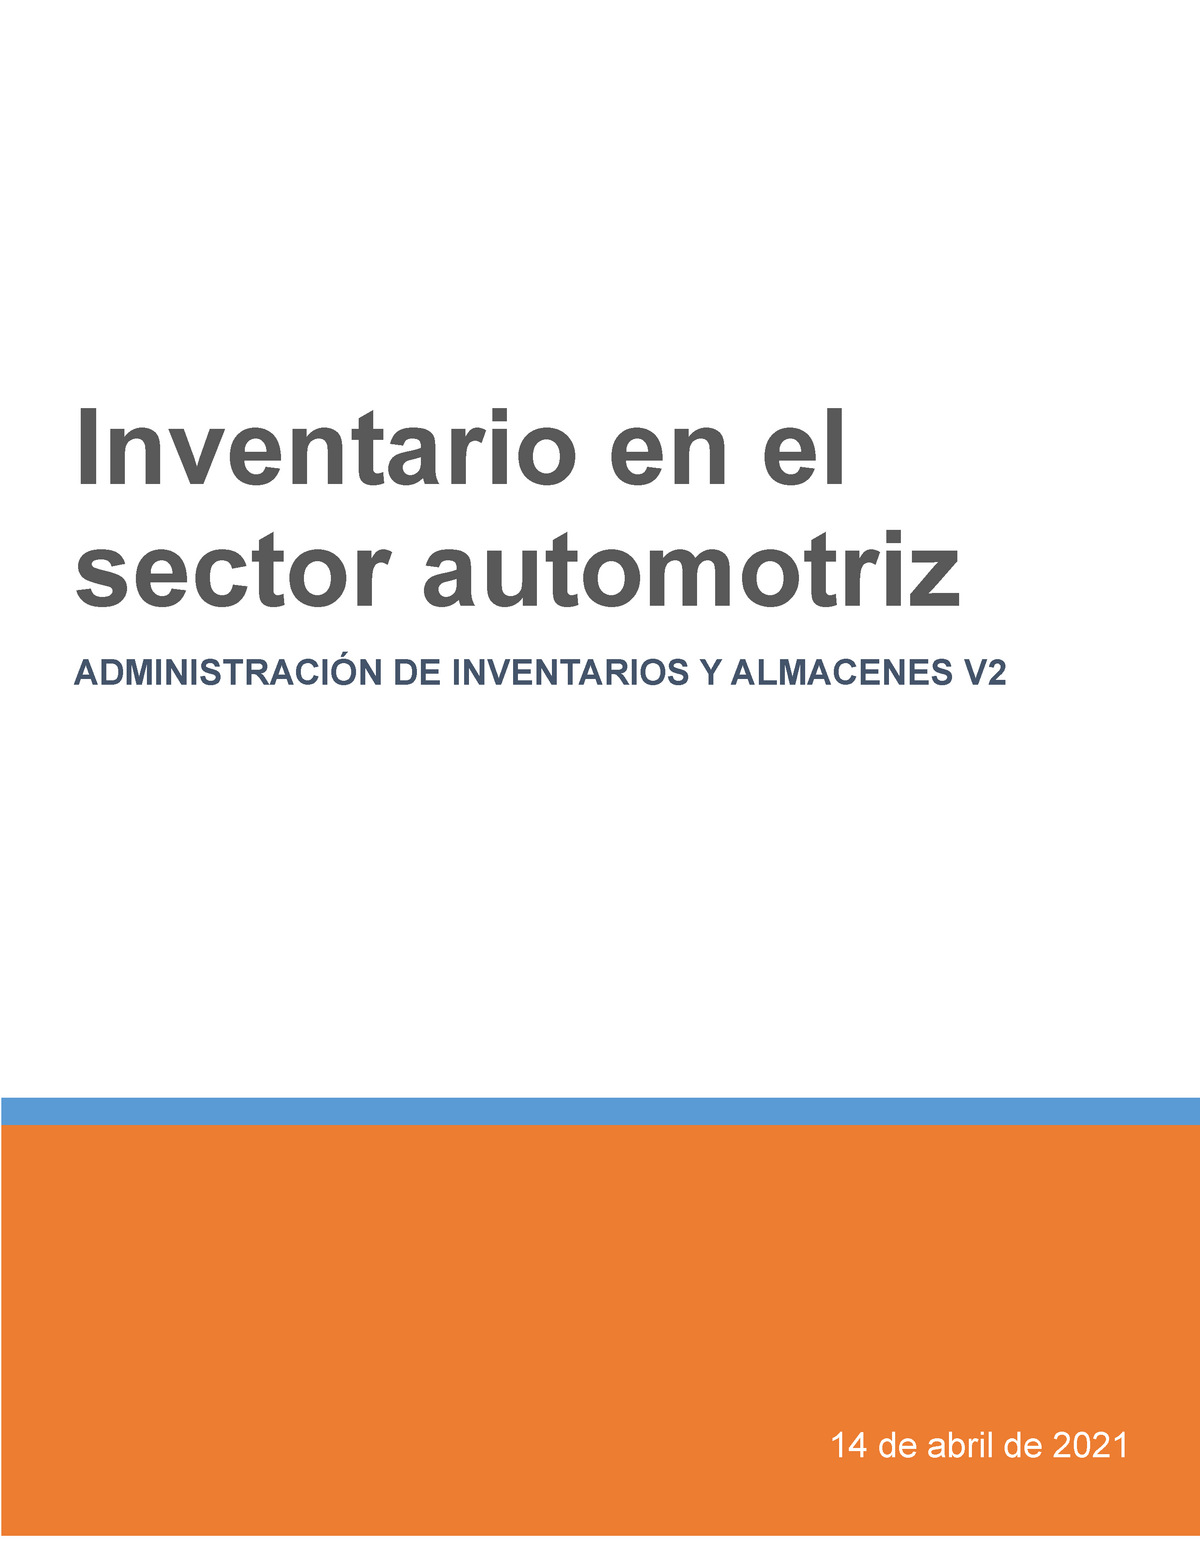 Inventario Sector Automotriz 14 De Abril De 2021 Inventario En El Sector Automotriz 7161